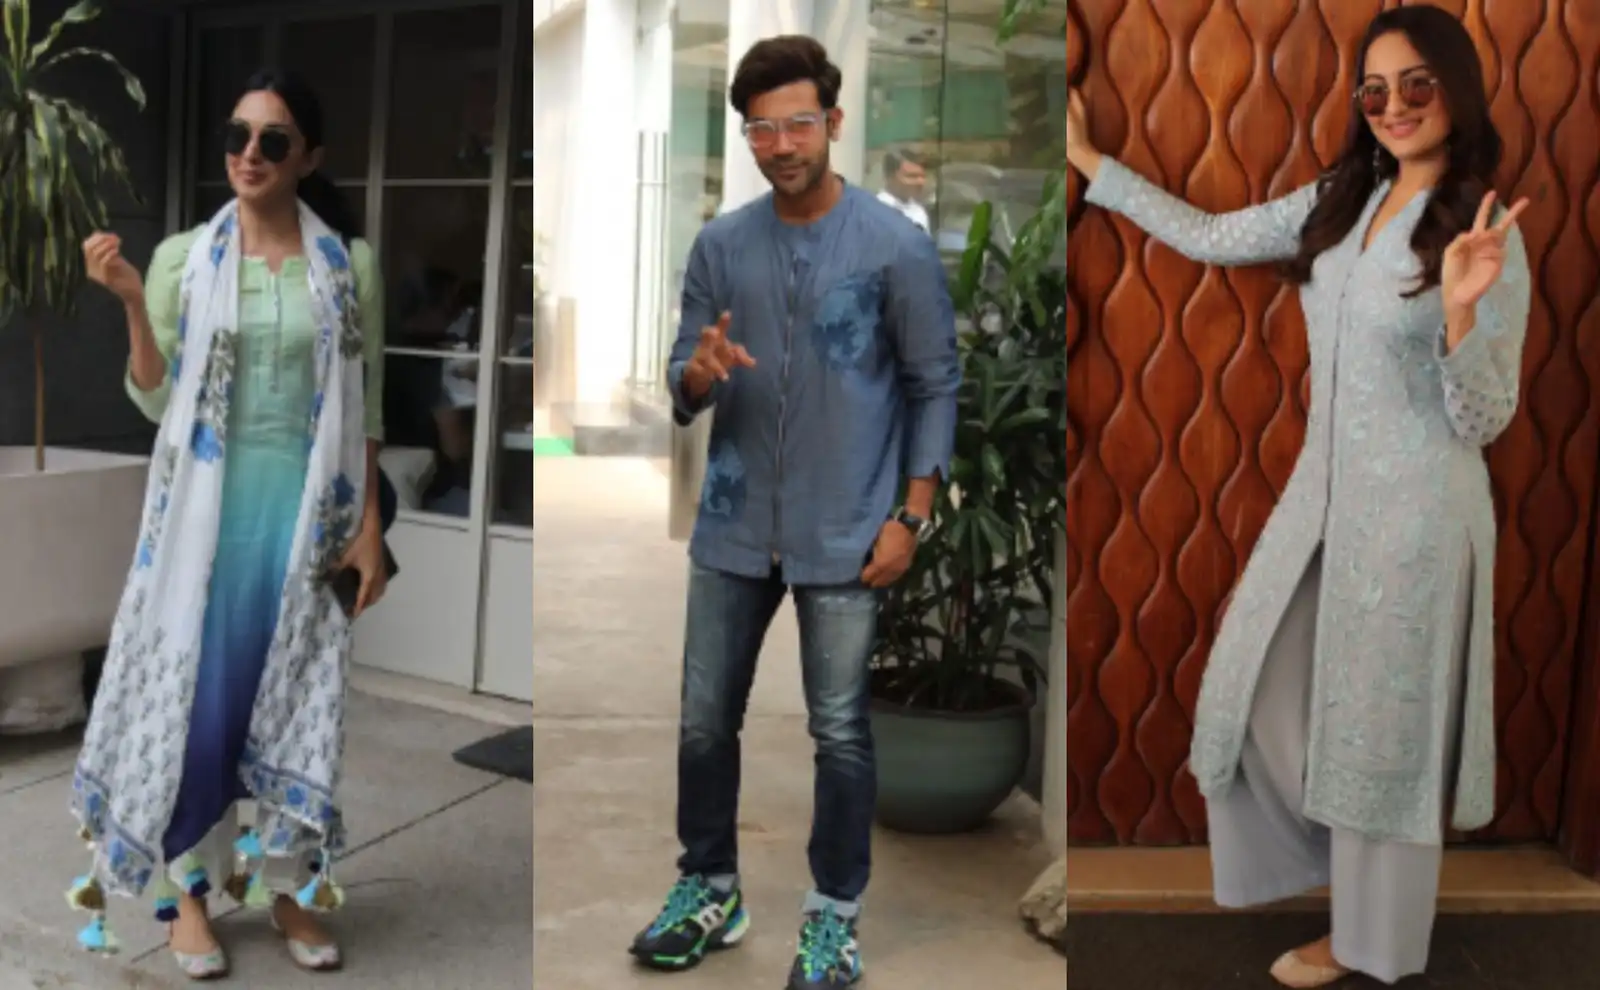 Celebrities Spotted: 'कबीर सिंह' की एक्ट्रेस कियारा अडवाणी से लेकर मलायका अरोड़ा तक, आज यहाँ नज़र आए सितारे !